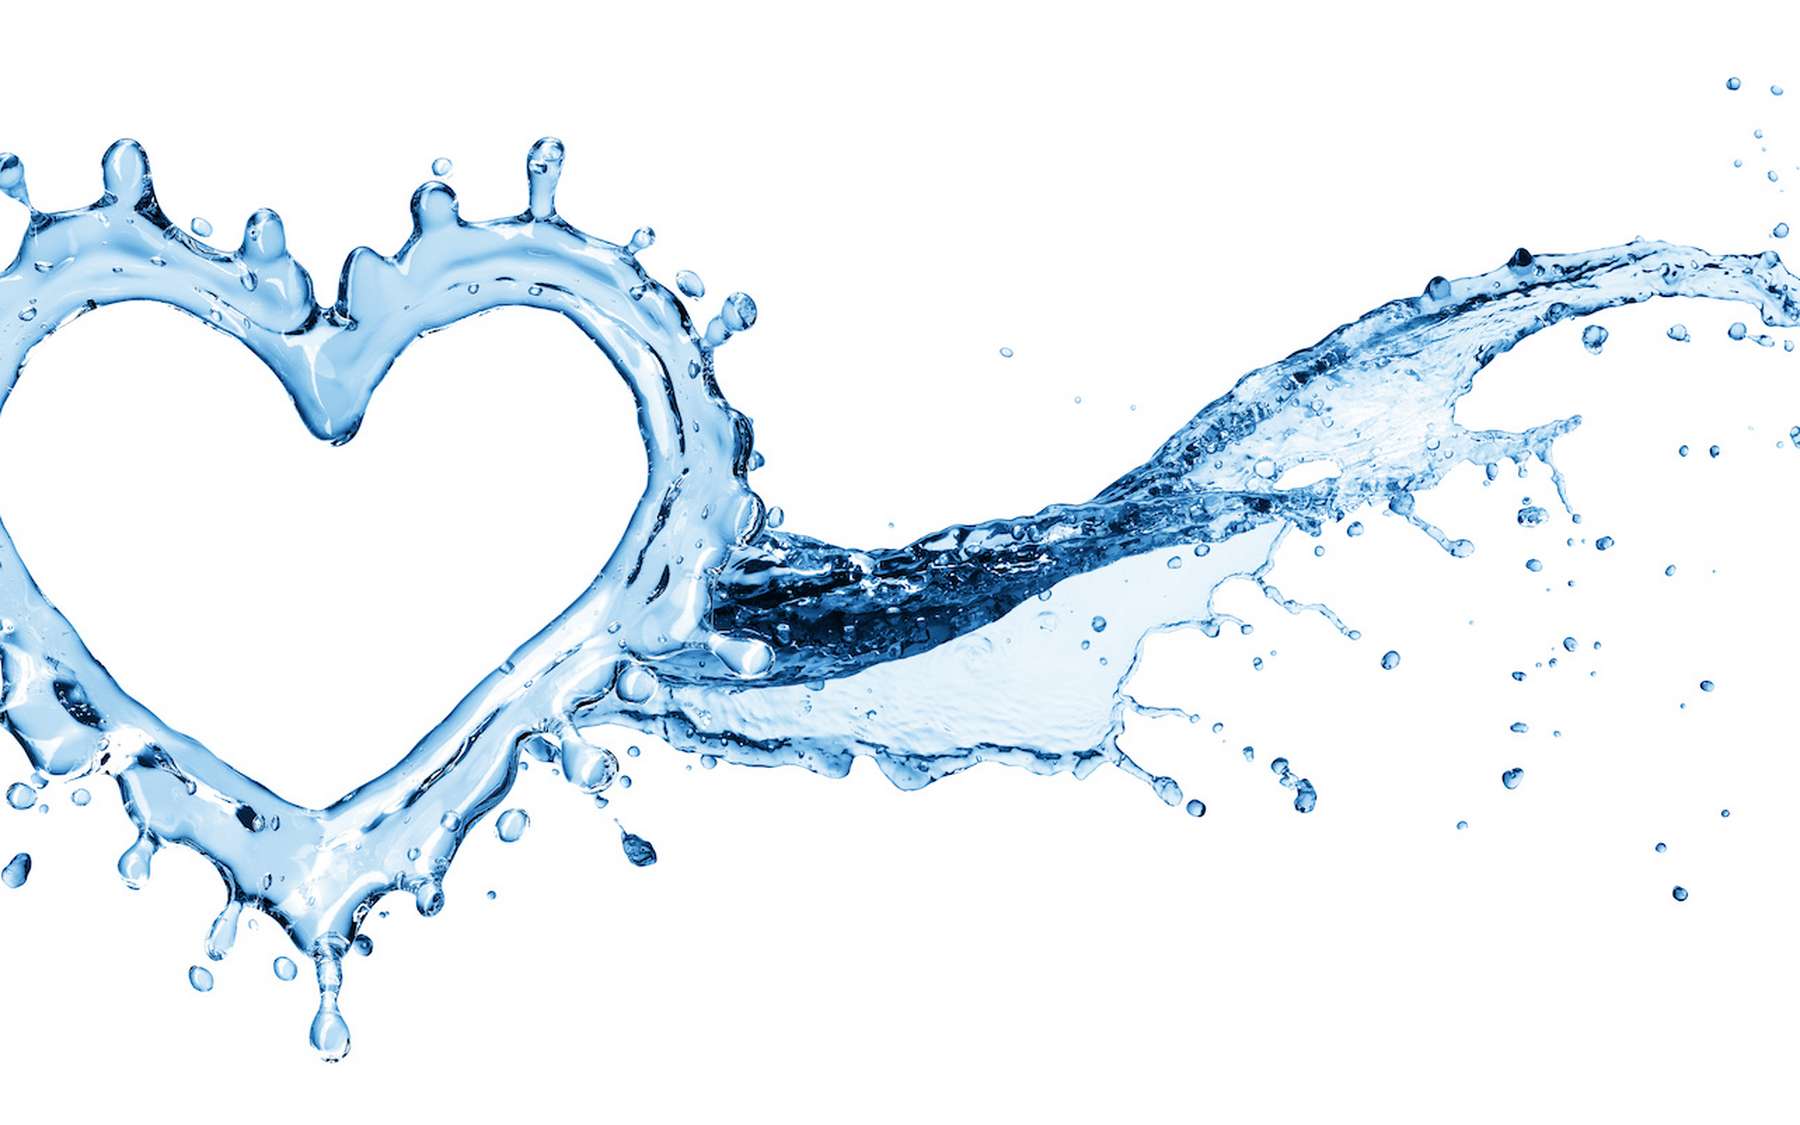 Boire 8 verres d'eau par jour réduit les risques d'insuffisance cardiaque